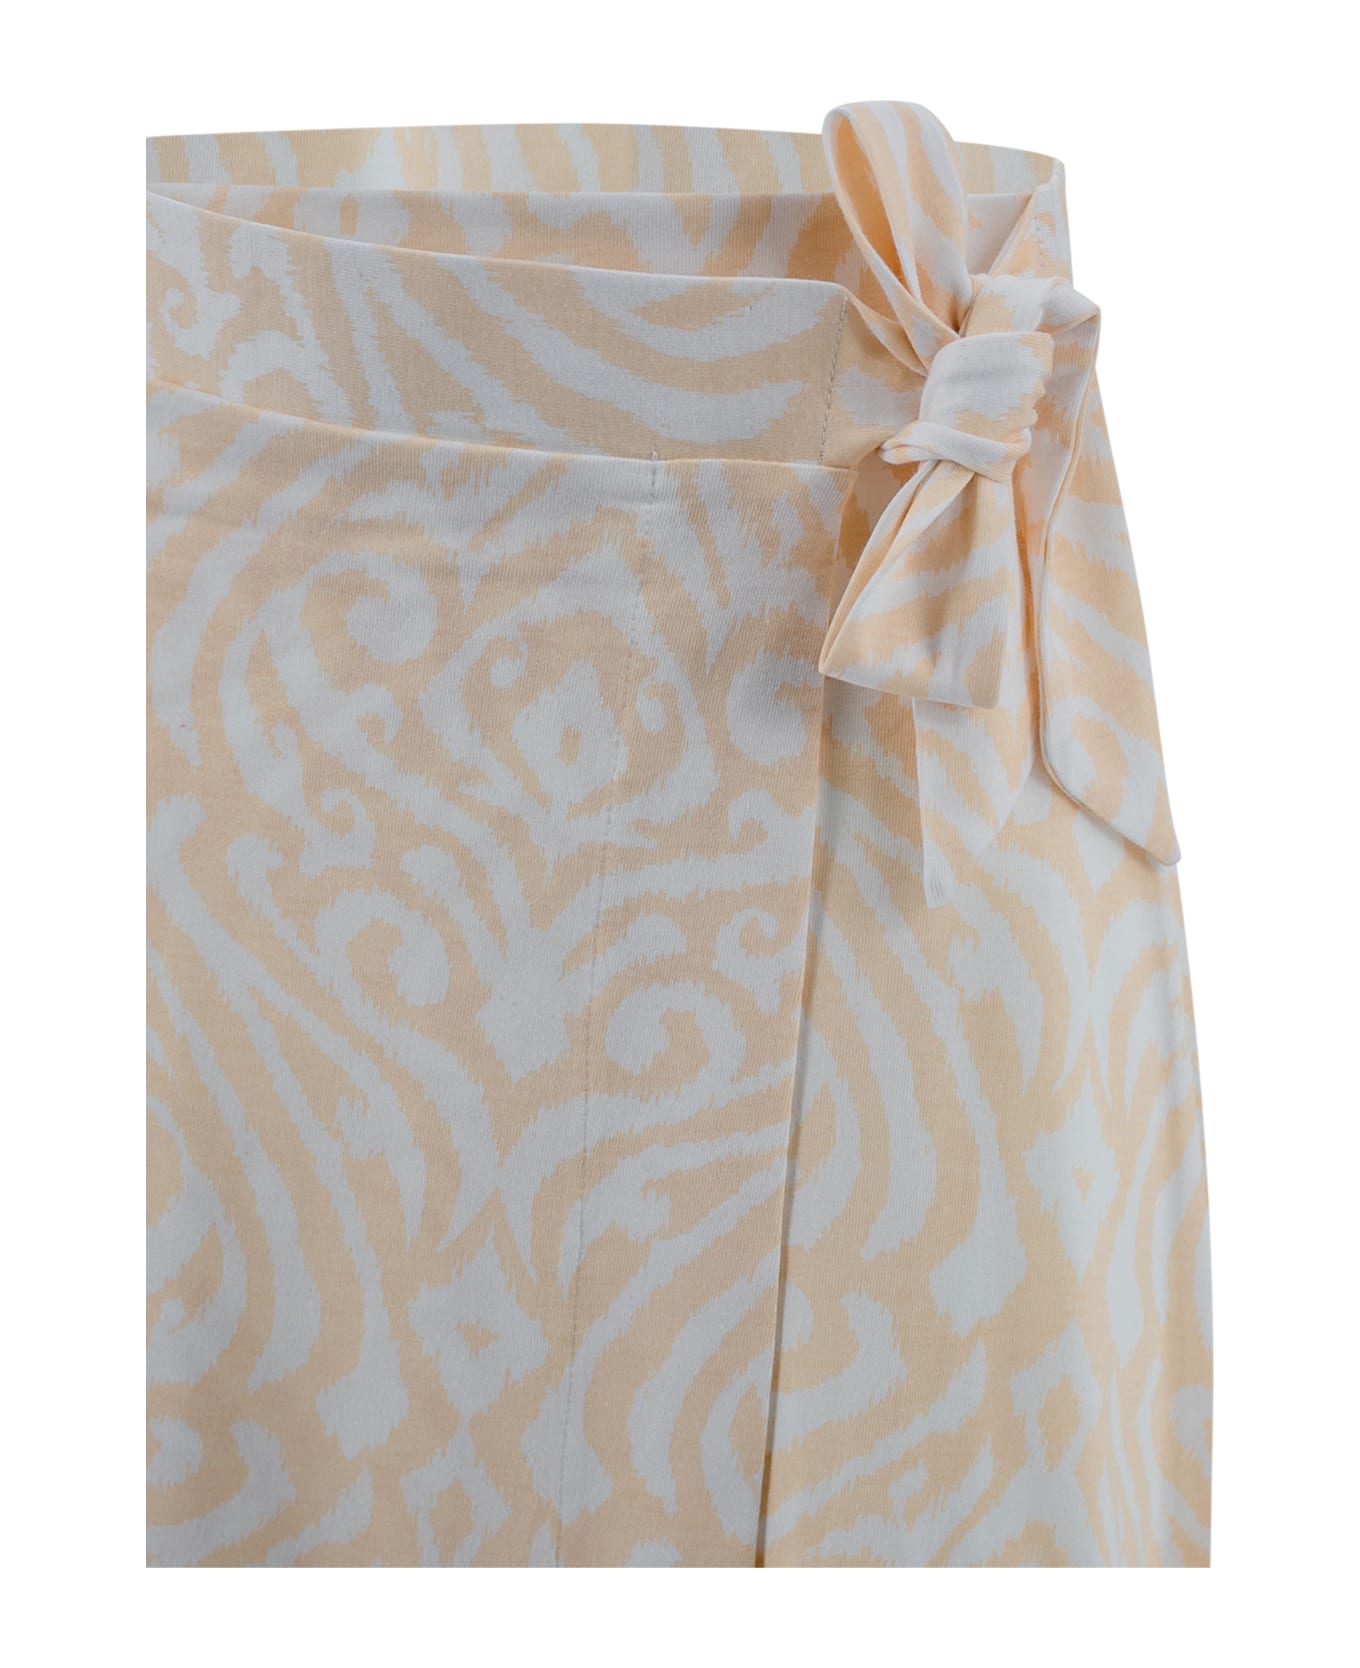 Surkana Long Printed Crisscross Skirt - Crudo